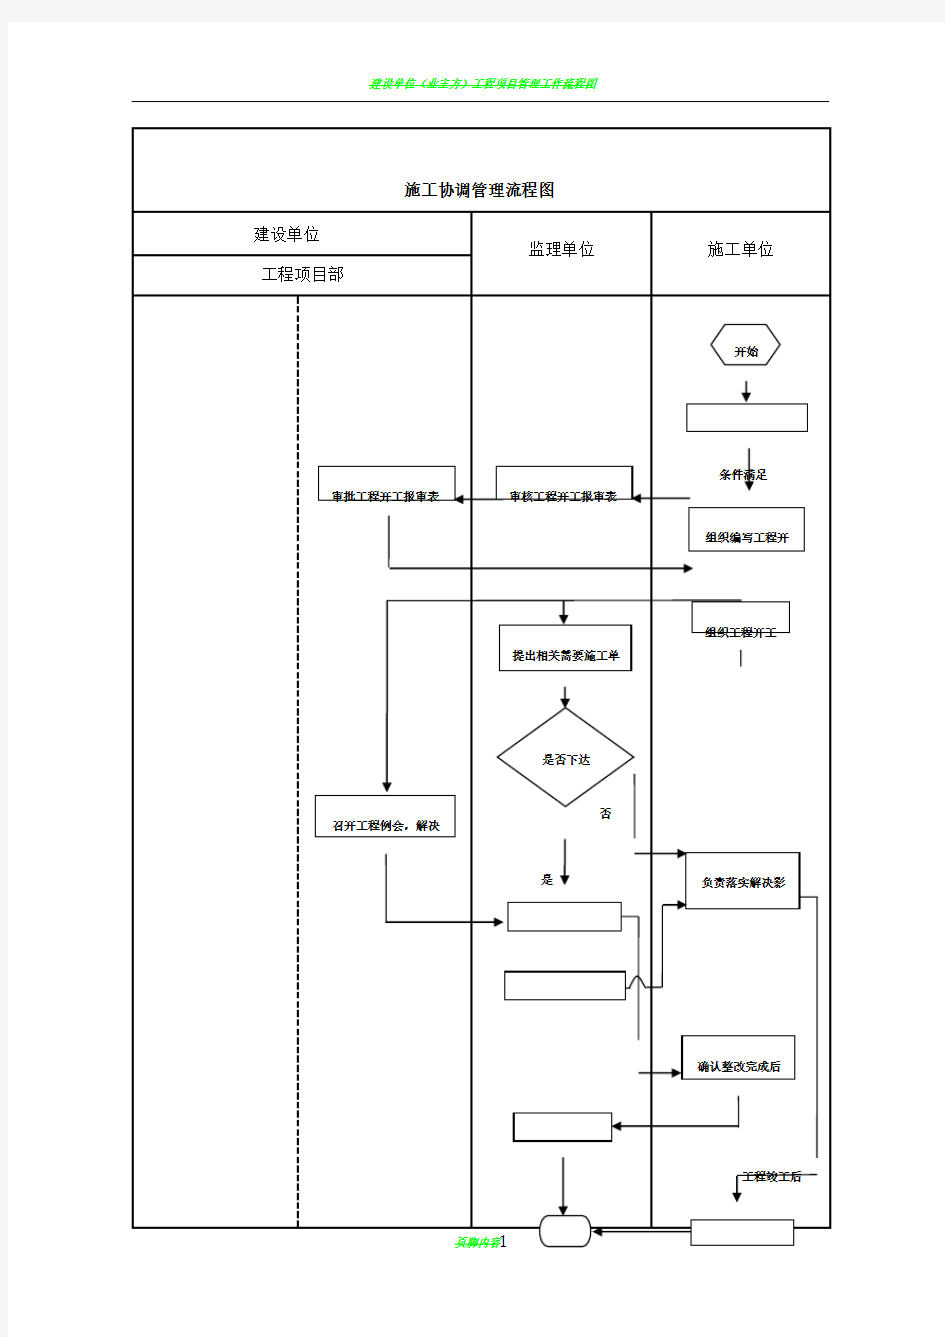 建设单位工程项目管理流程图17514